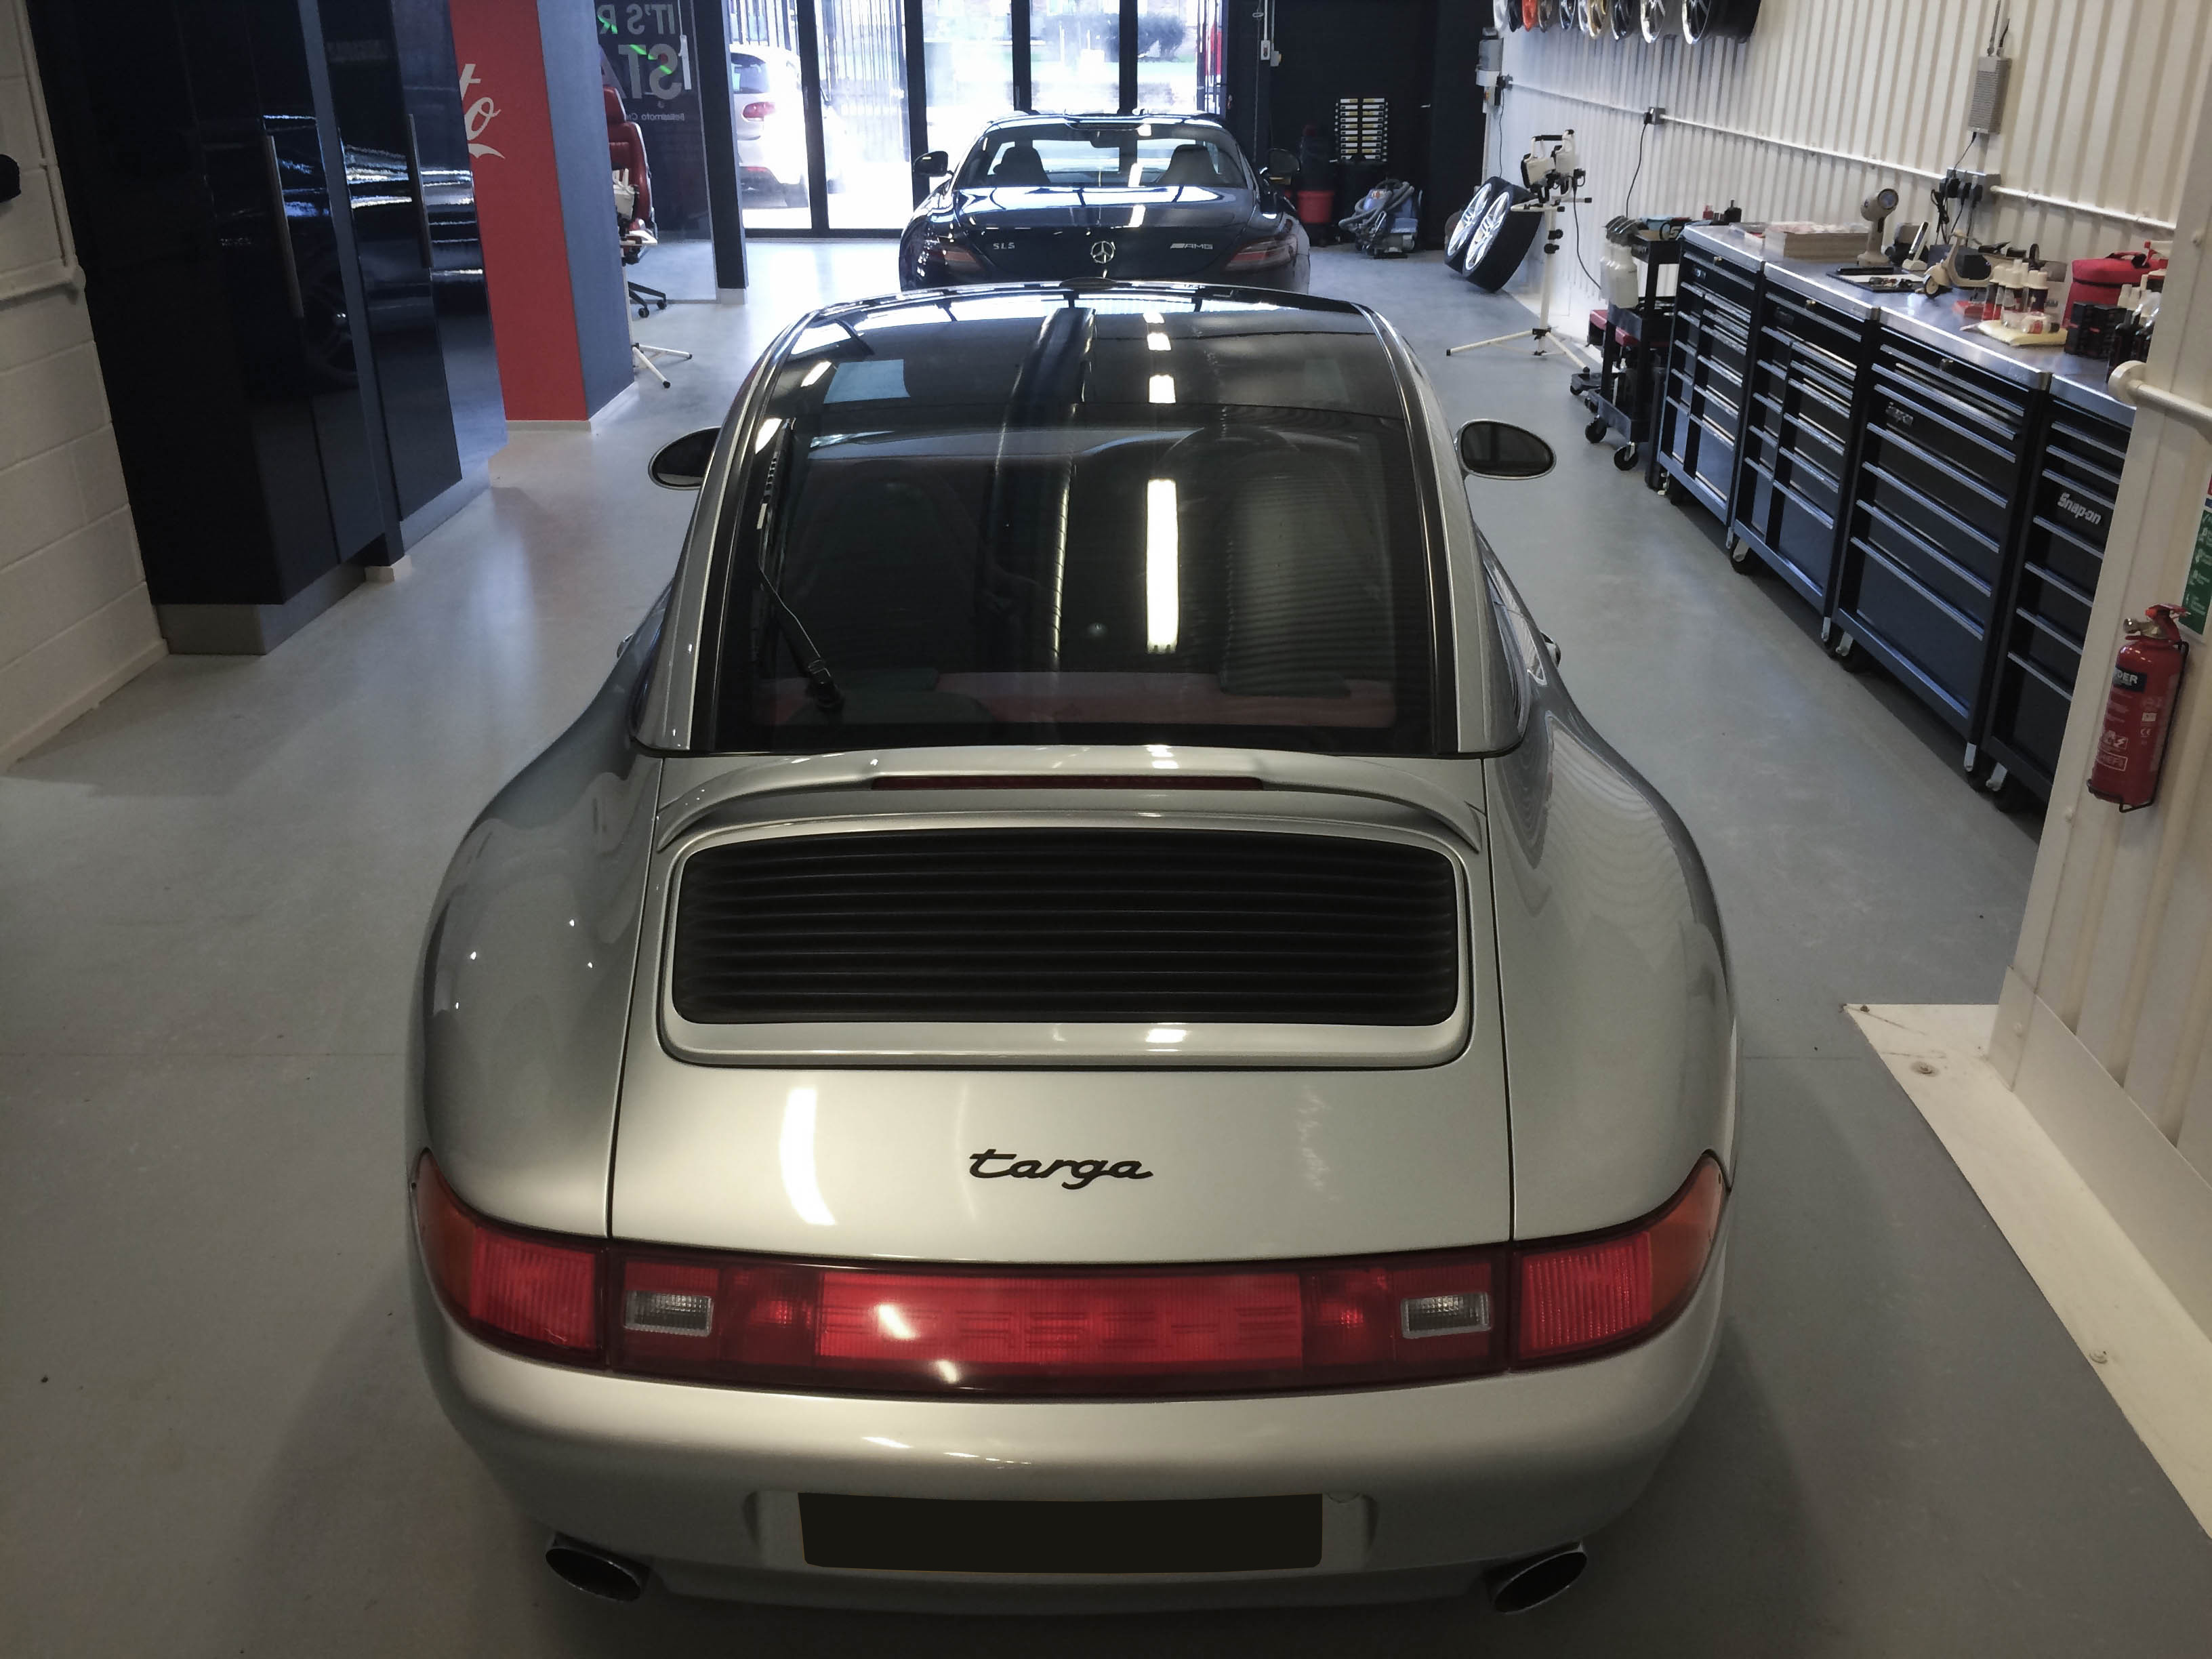 Porsche Targa – Rear